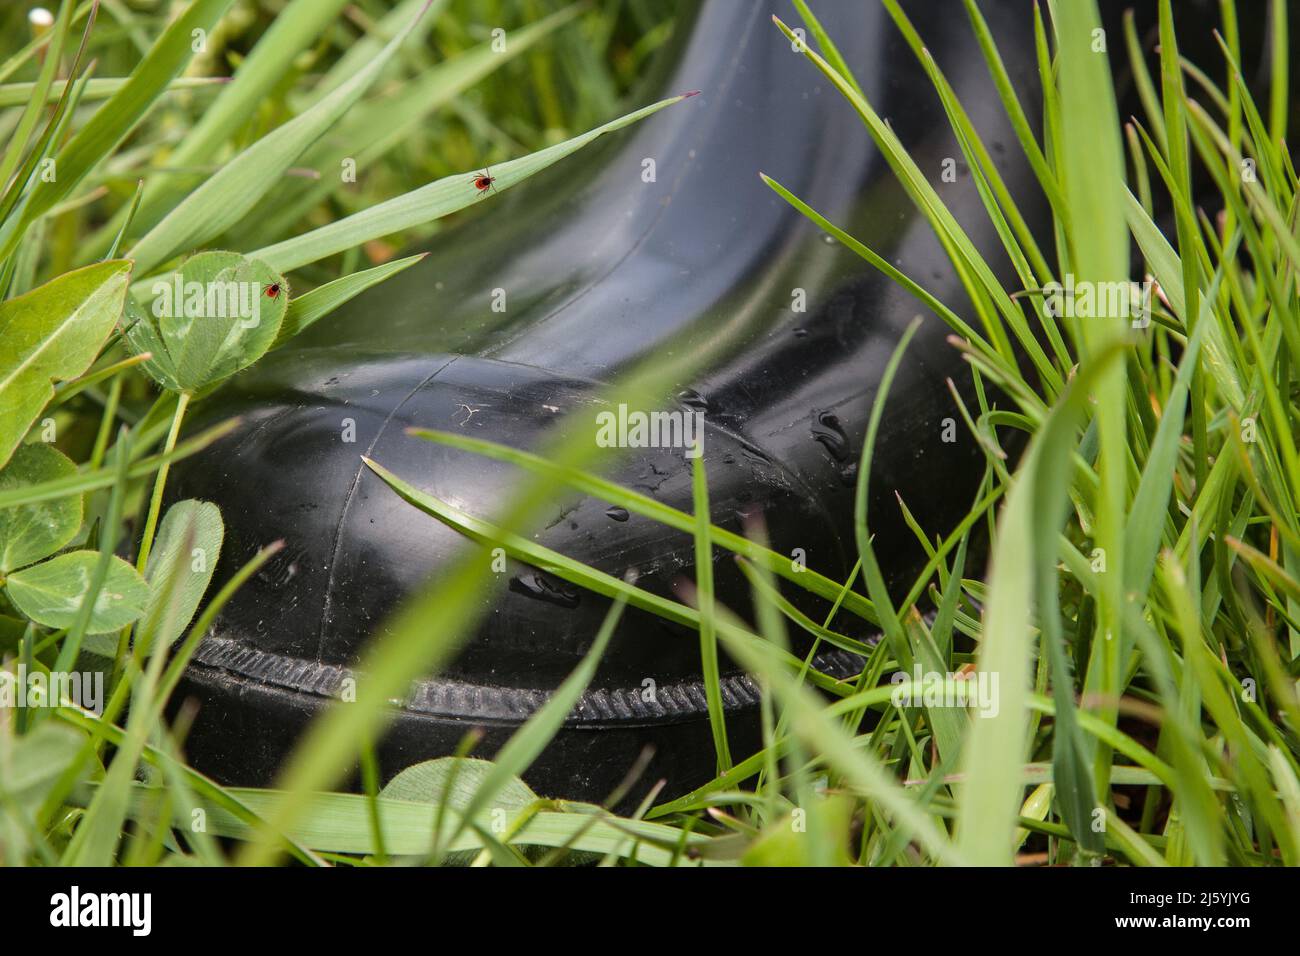 Indossare stivali di gomma quando si escursioni attraverso i prati e la natura, perché offrono una buona protezione contro le zecche che si aggirano ovunque nell'erba. Foto Stock